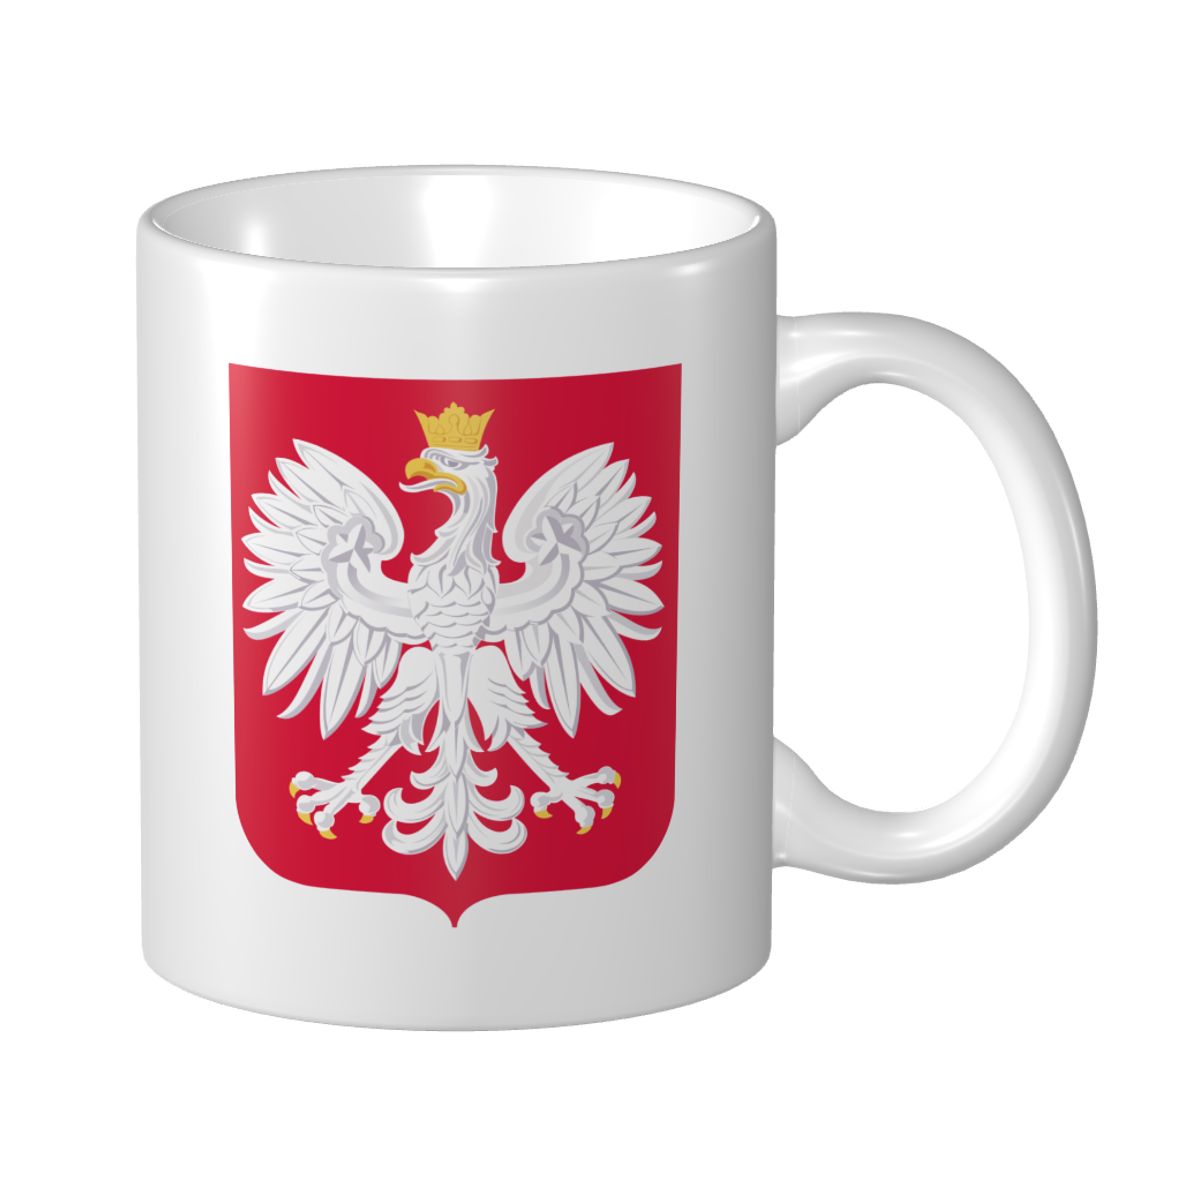 Poland National Football Team Ceramic Mug